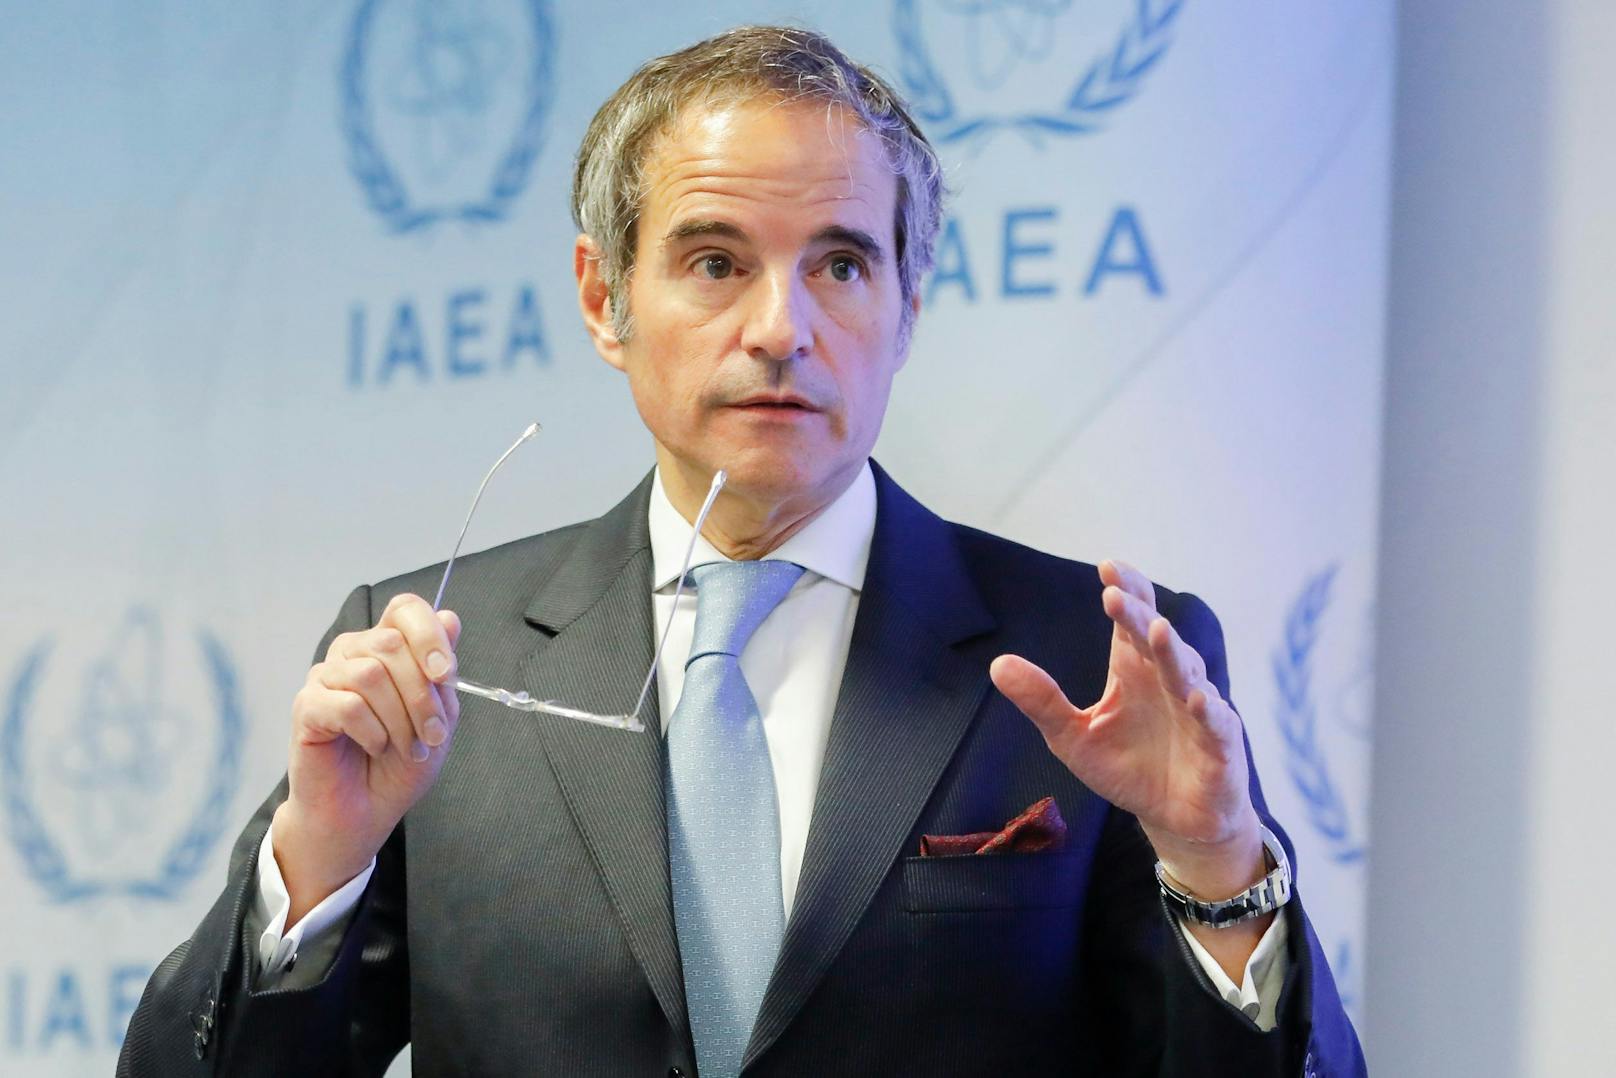 IAEO-Generalsekretär Rafael Mariano Grossi ist in großer Sorge vor einem möglichen Nuklear-Zwischenfall.